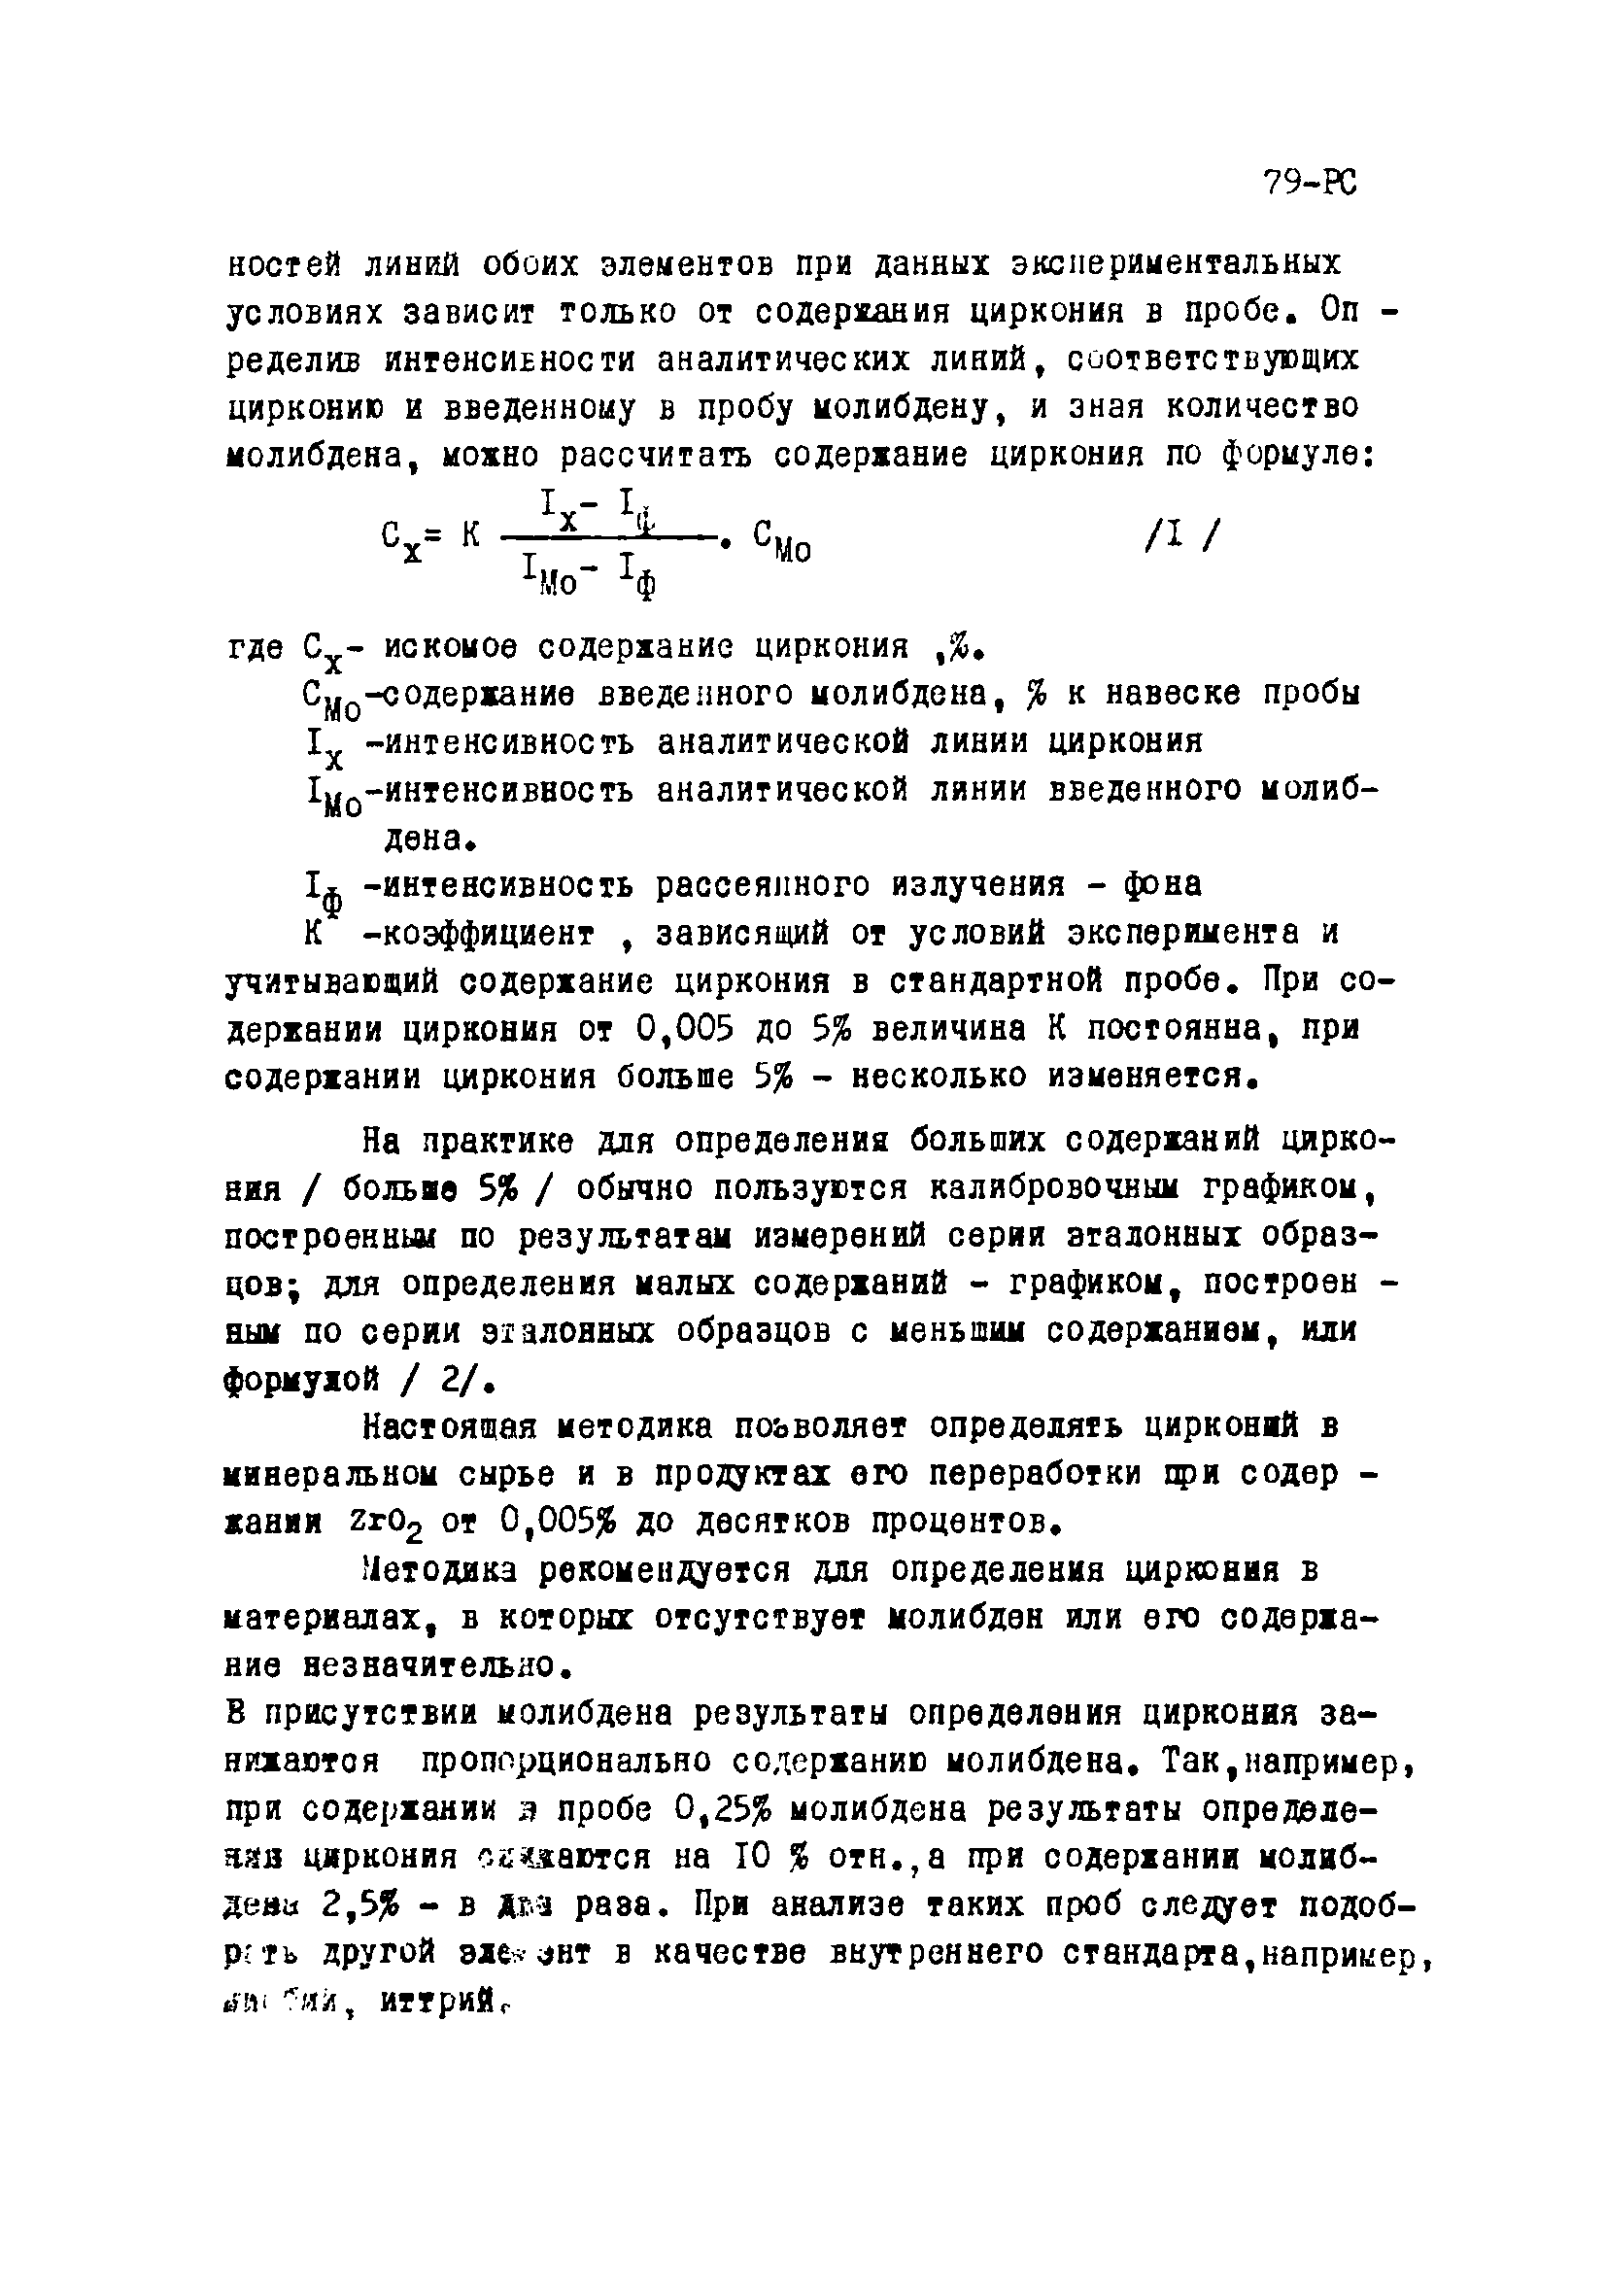 Инструкция НСАМ 79-РС